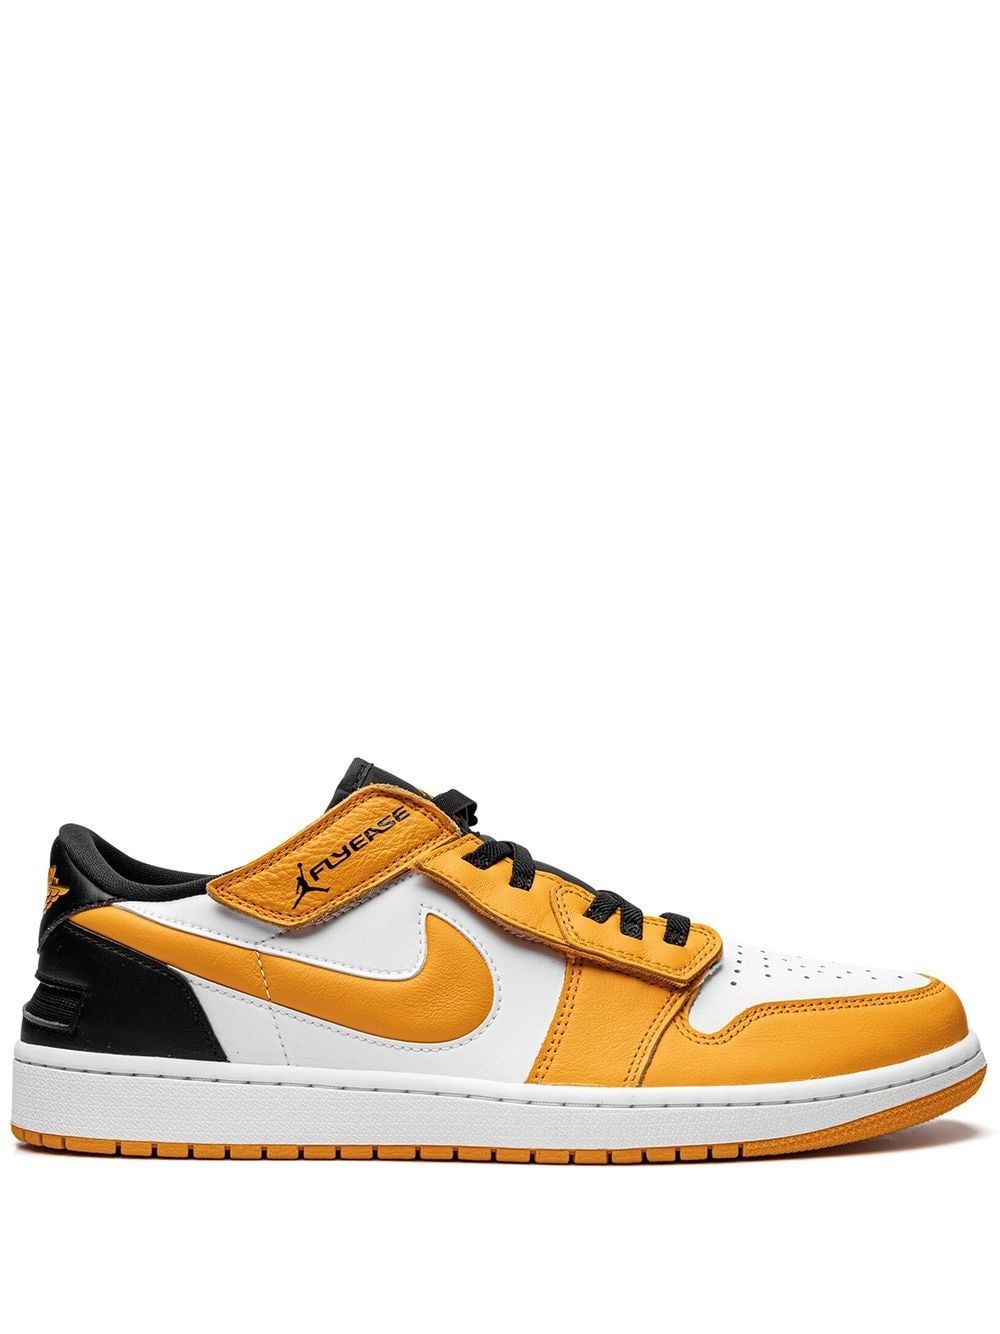 Jordan Jordan 1 Low FlyEase sneakers - Yellow